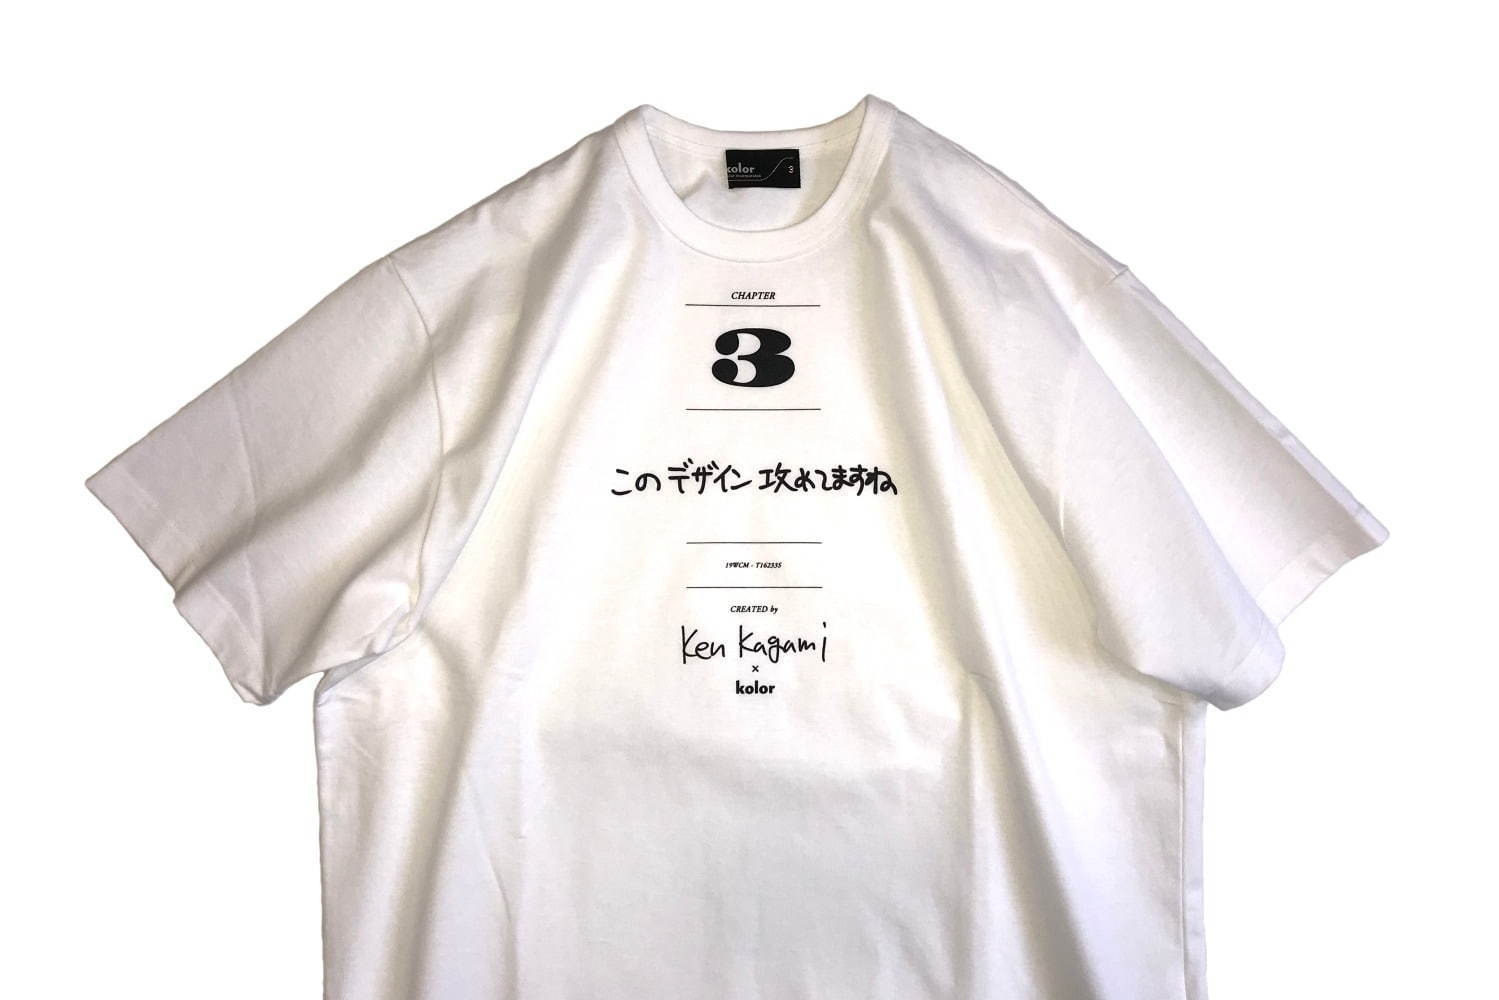 カラー kolor × 加賀美健 Kagami ken  コラボTシャツ 3